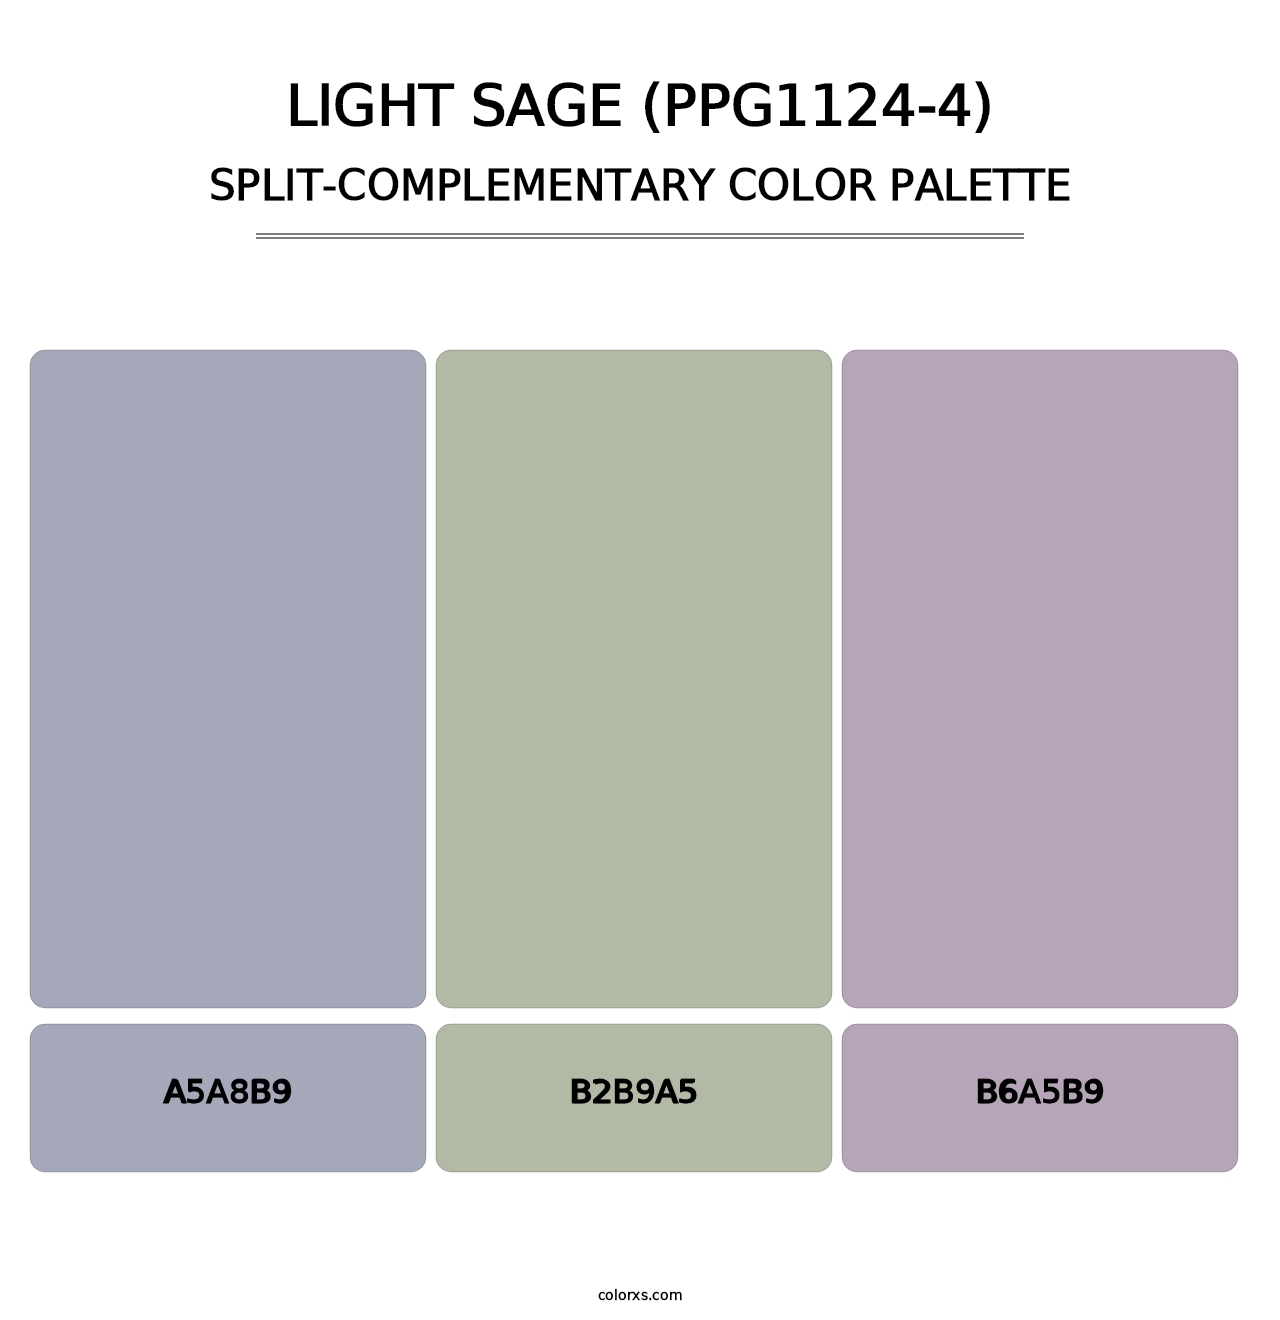 Light Sage (PPG1124-4) - Split-Complementary Color Palette